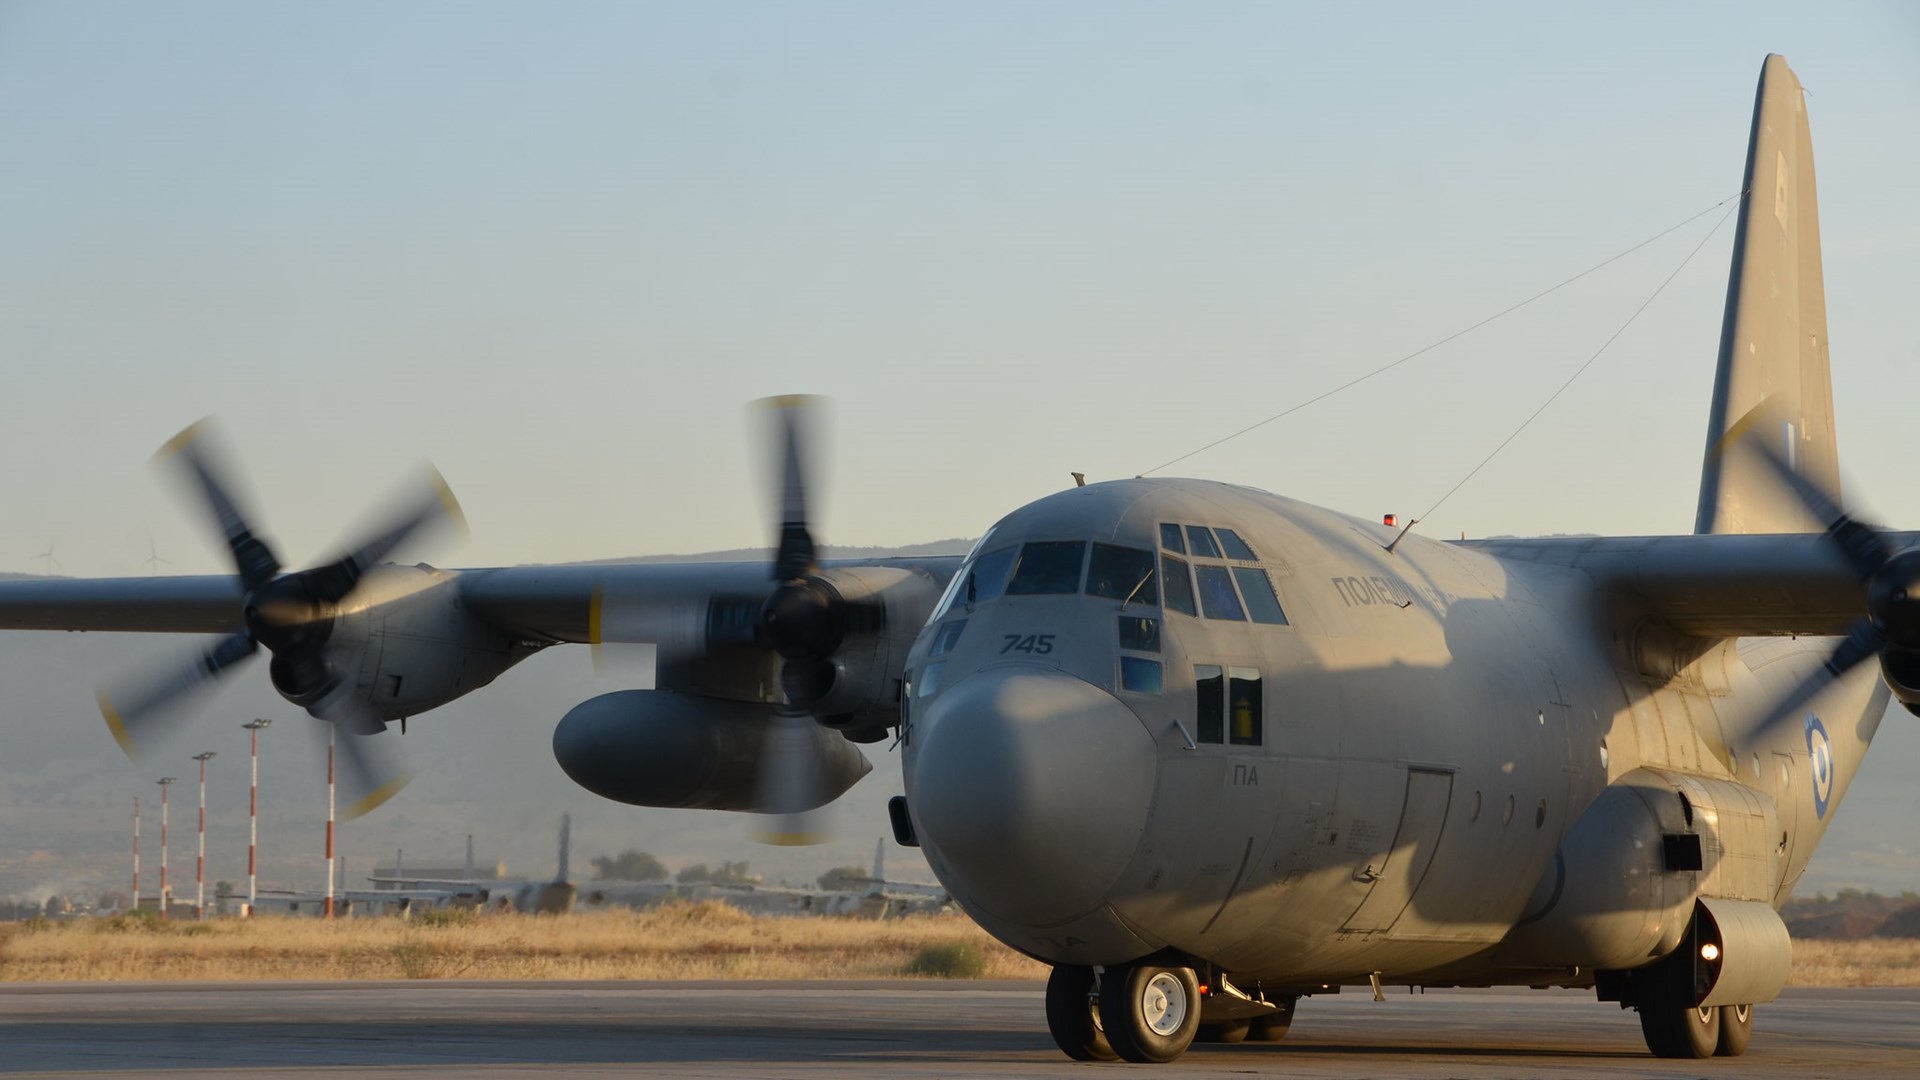 Προσπαθούν να απαξιώσουν την ΕΑΒ; – Τι συμβαίνει με τον “σκασμένο” κινητήρα του C-130